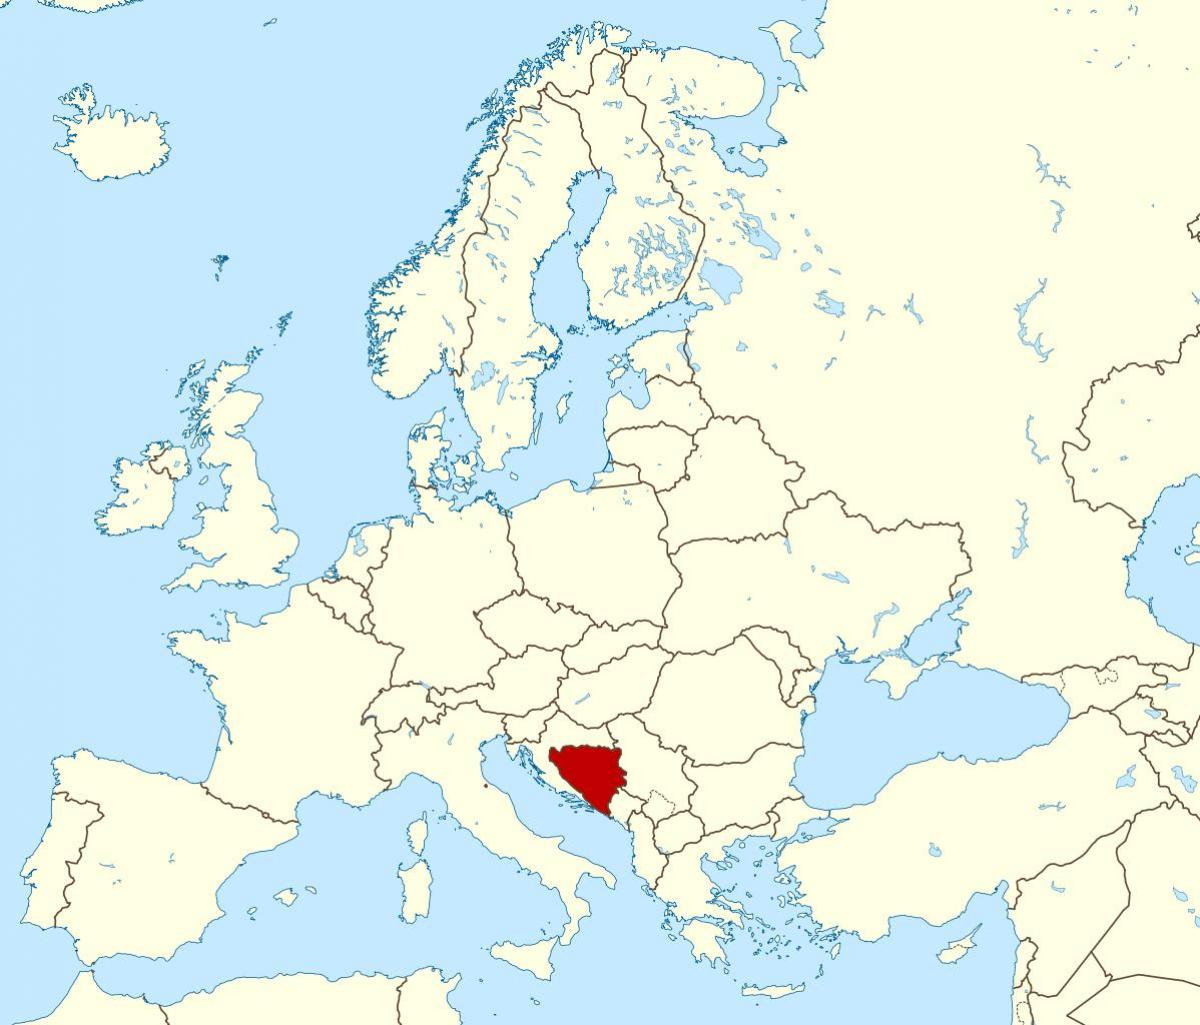 แผนที่ของบอสเนียตำแหน่งของโลก